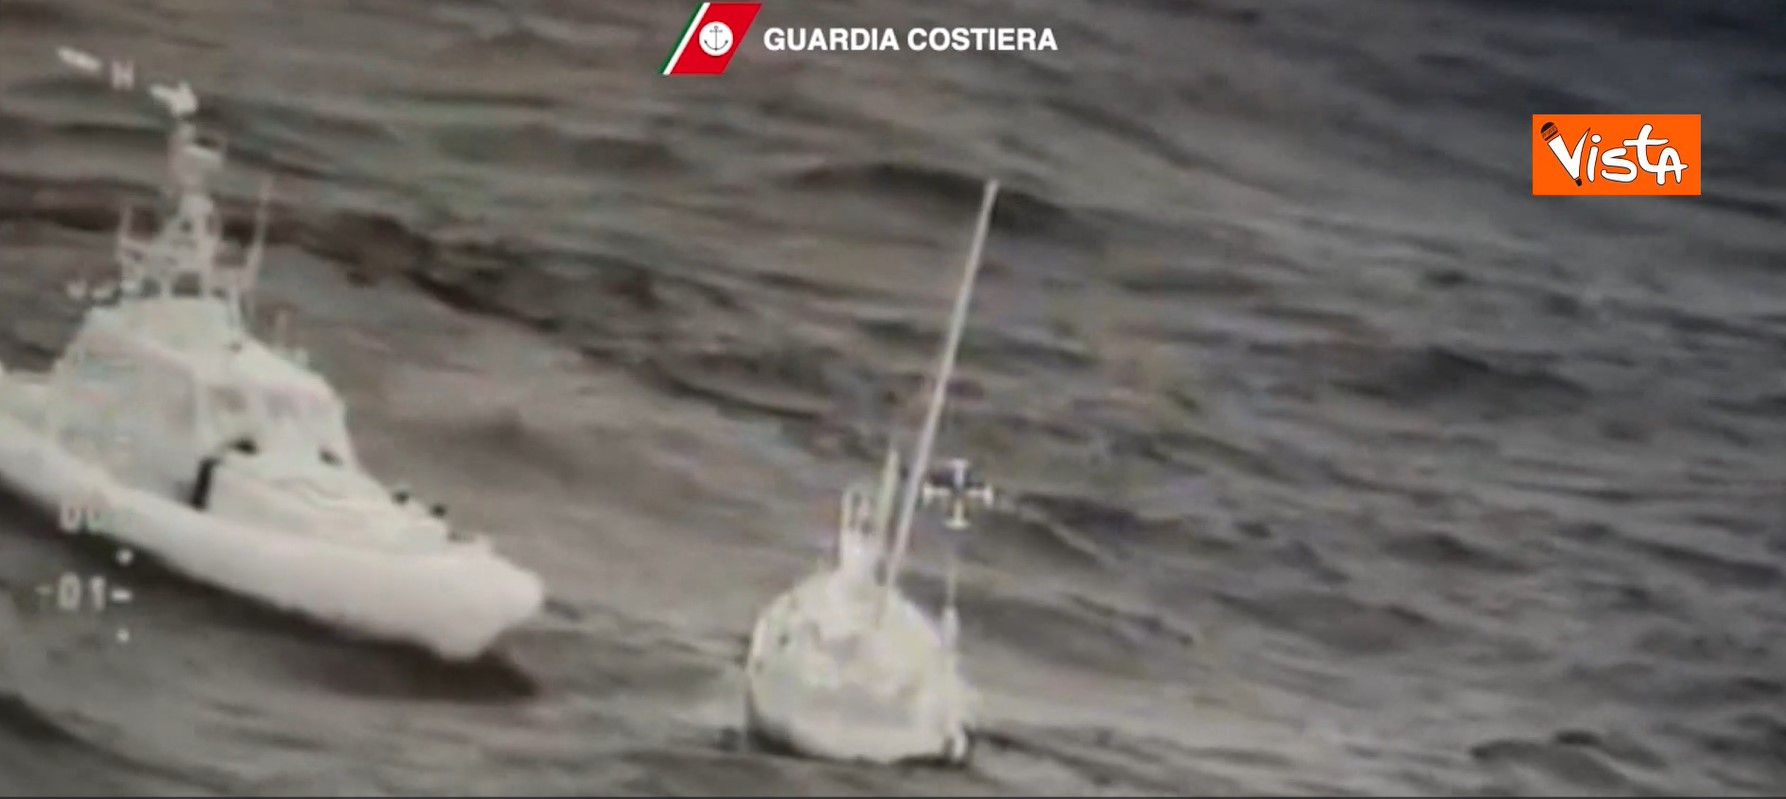 Mare forza 5 e tempo pessimo: il difficile salvataggio della Guardia Costiera del velista spagnolo disperso – Il video